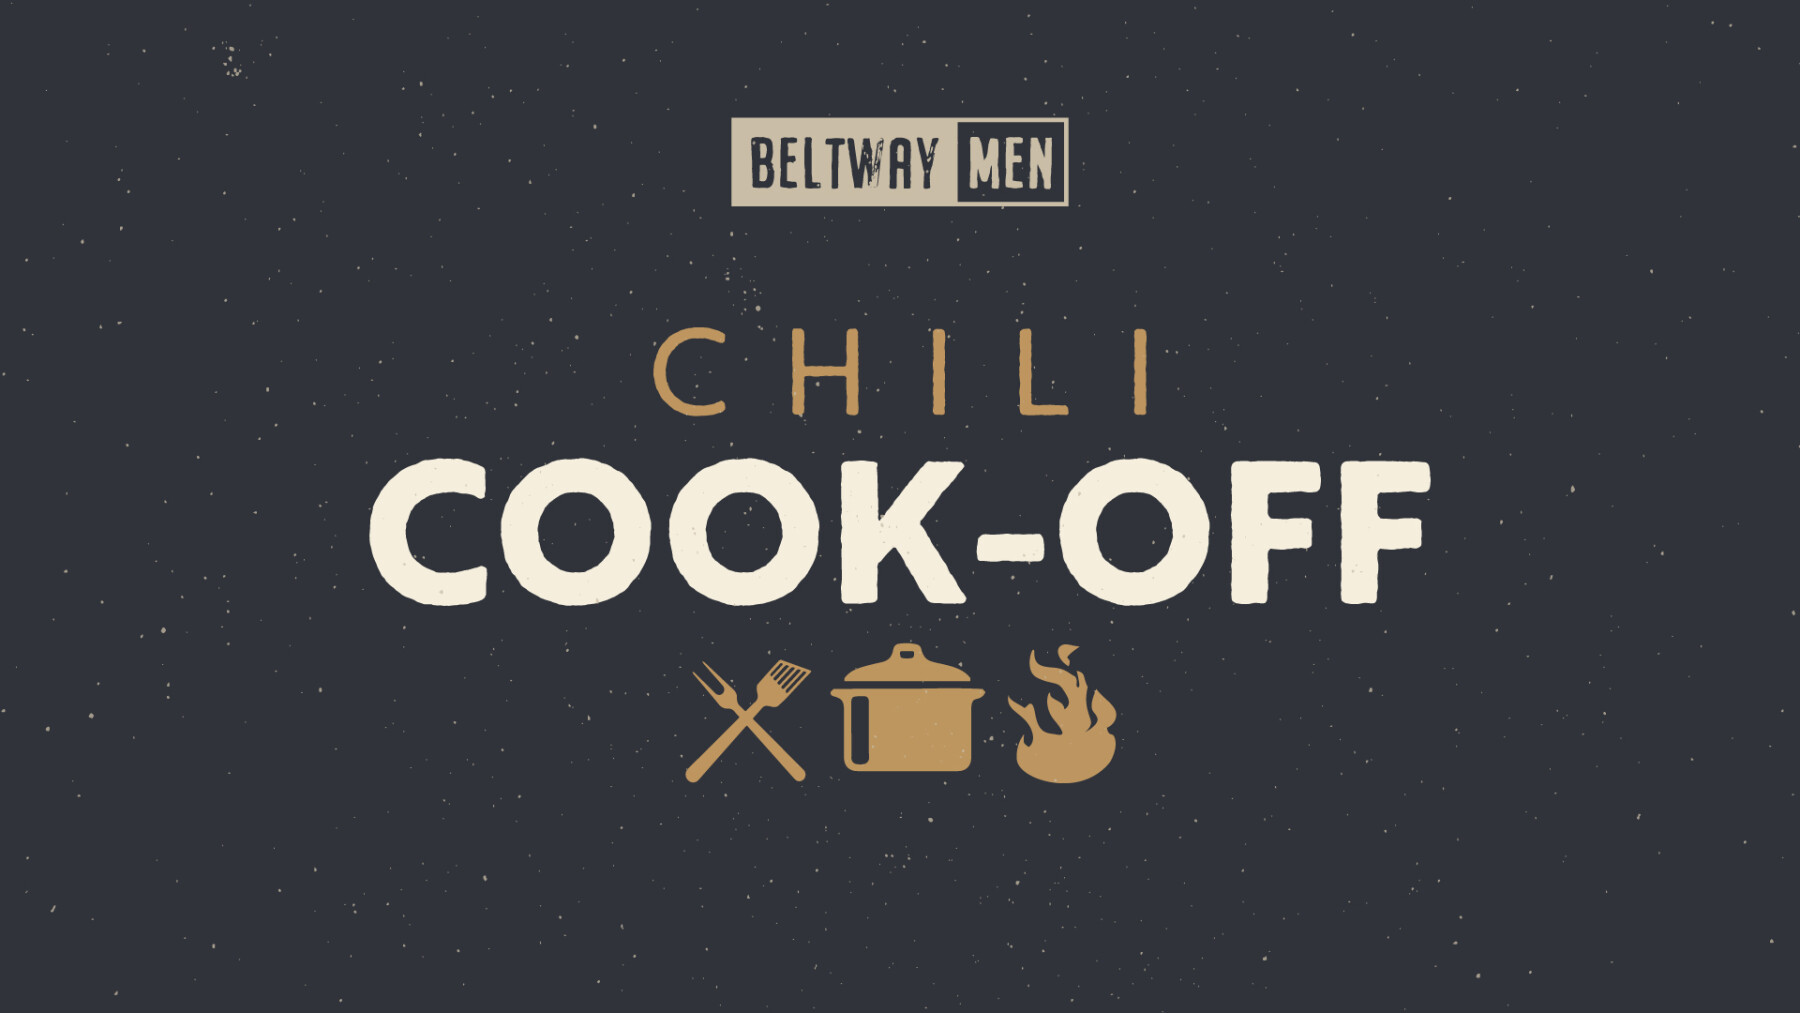 Men's Chili Cook-off